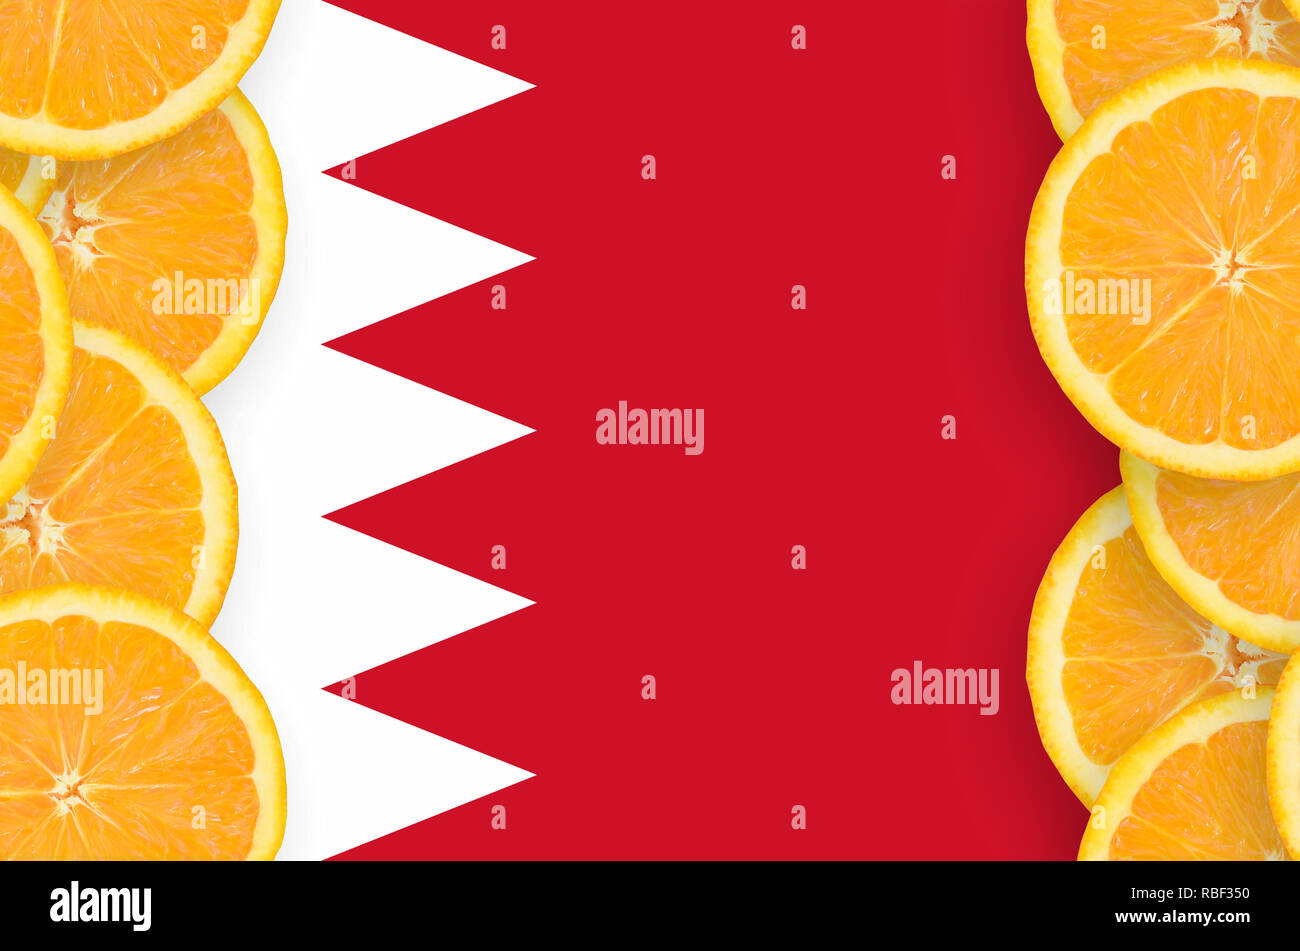 Drapeau de Bahreïn dans cadre vertical des tranches d'agrumes orange. Concept de croissance et de l'importation et l'exportation des agrumes Banque D'Images